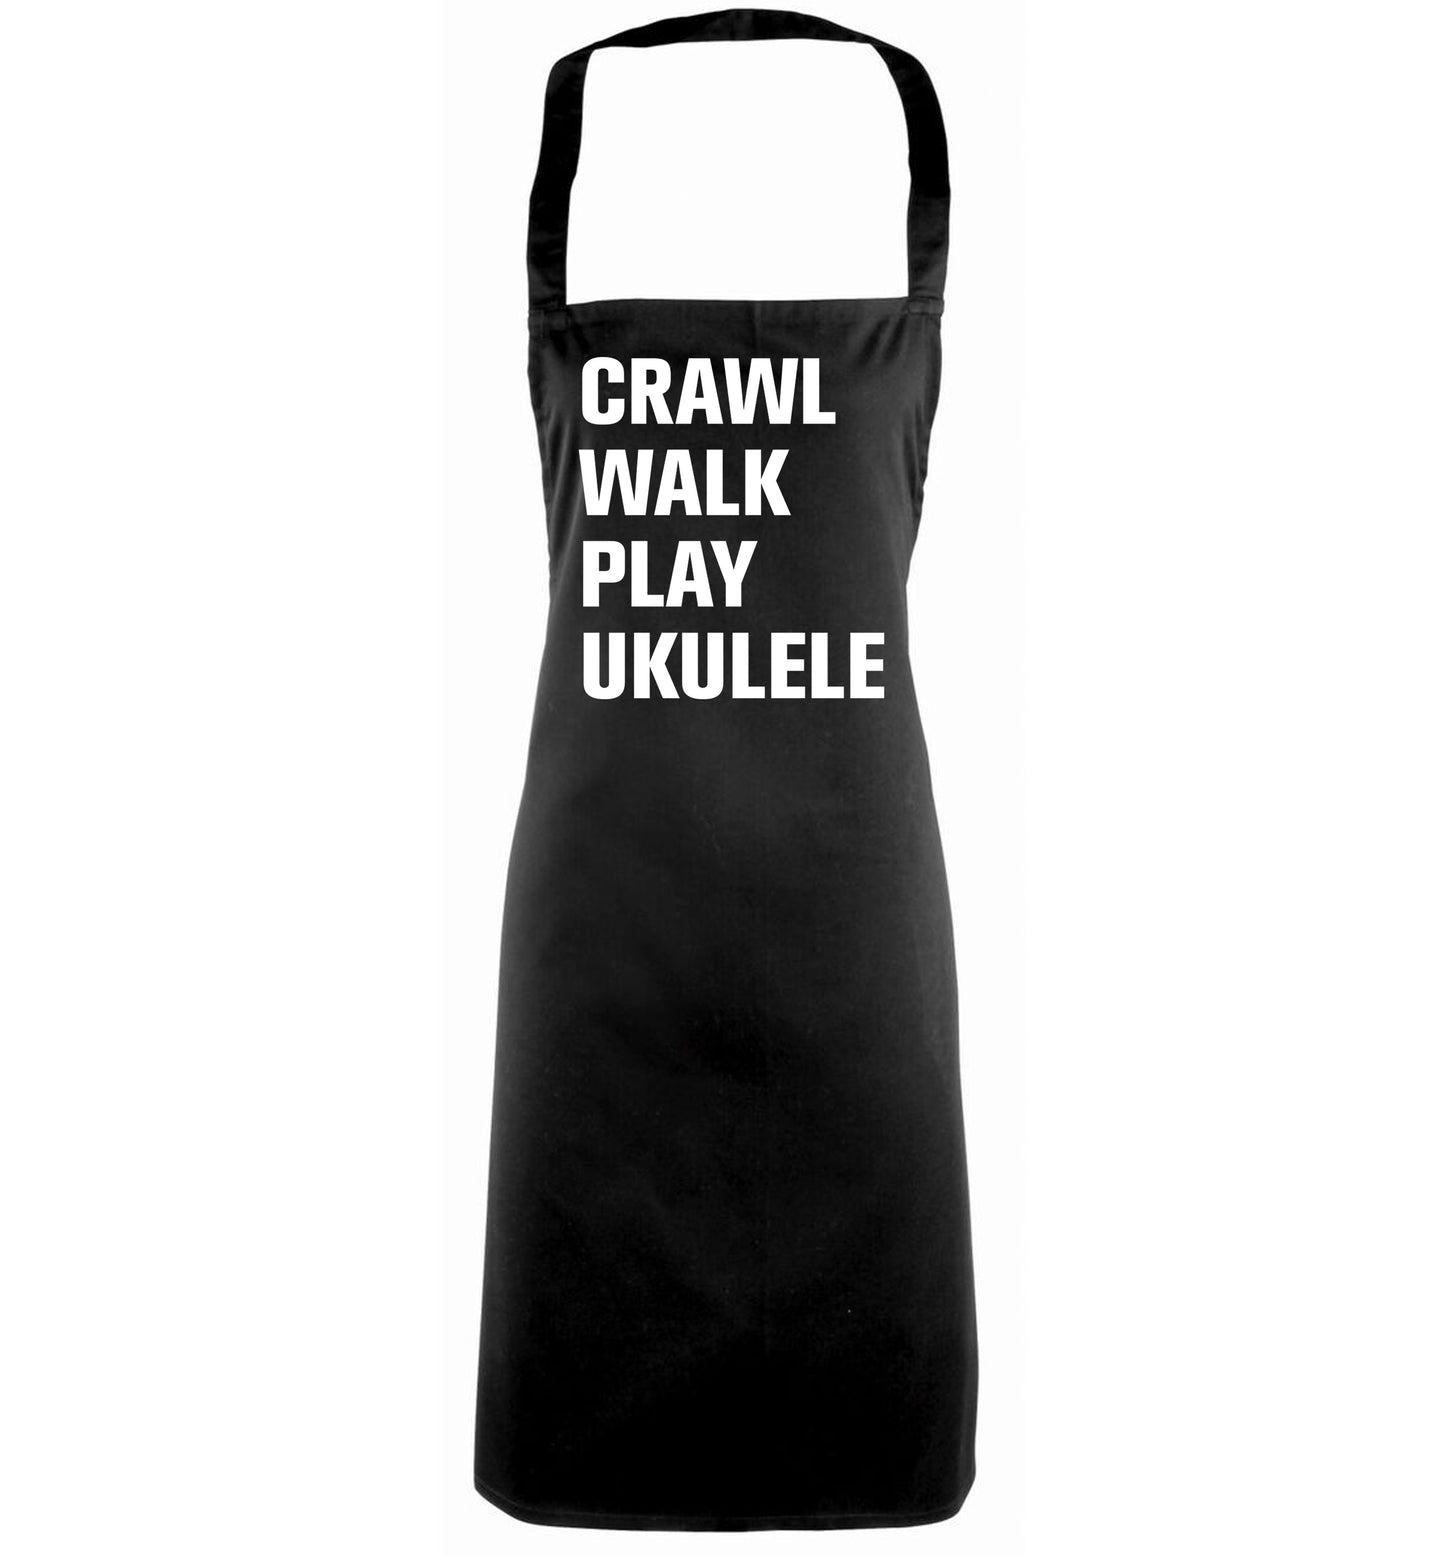 Crawl walk play ukulele black apron